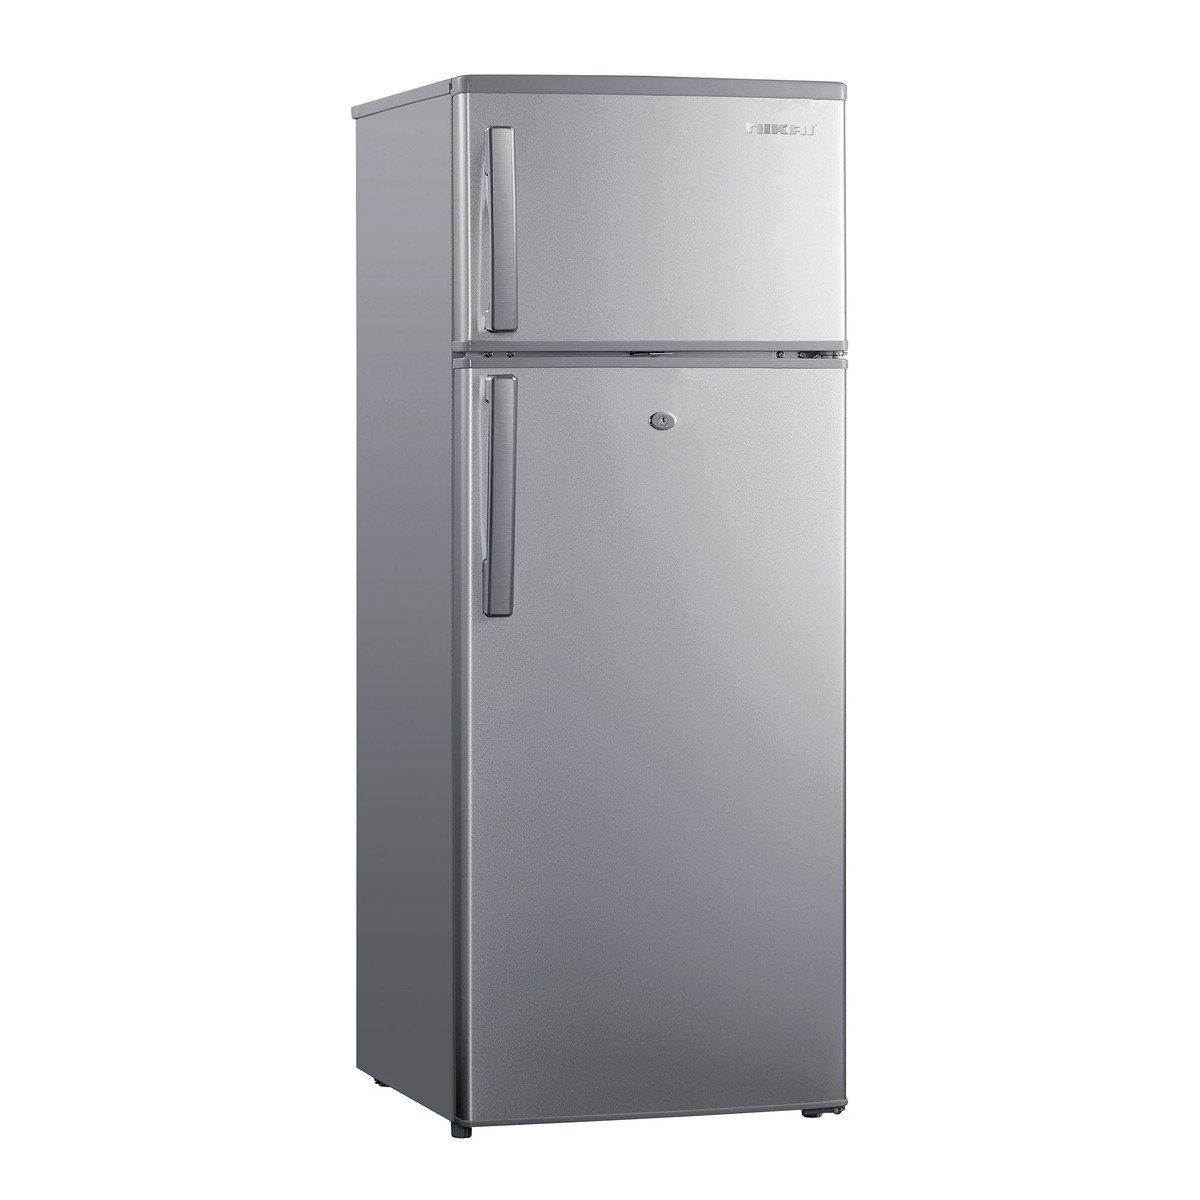 Nikai Double Door Refrigerator NRF240N23 206 Litre Silver